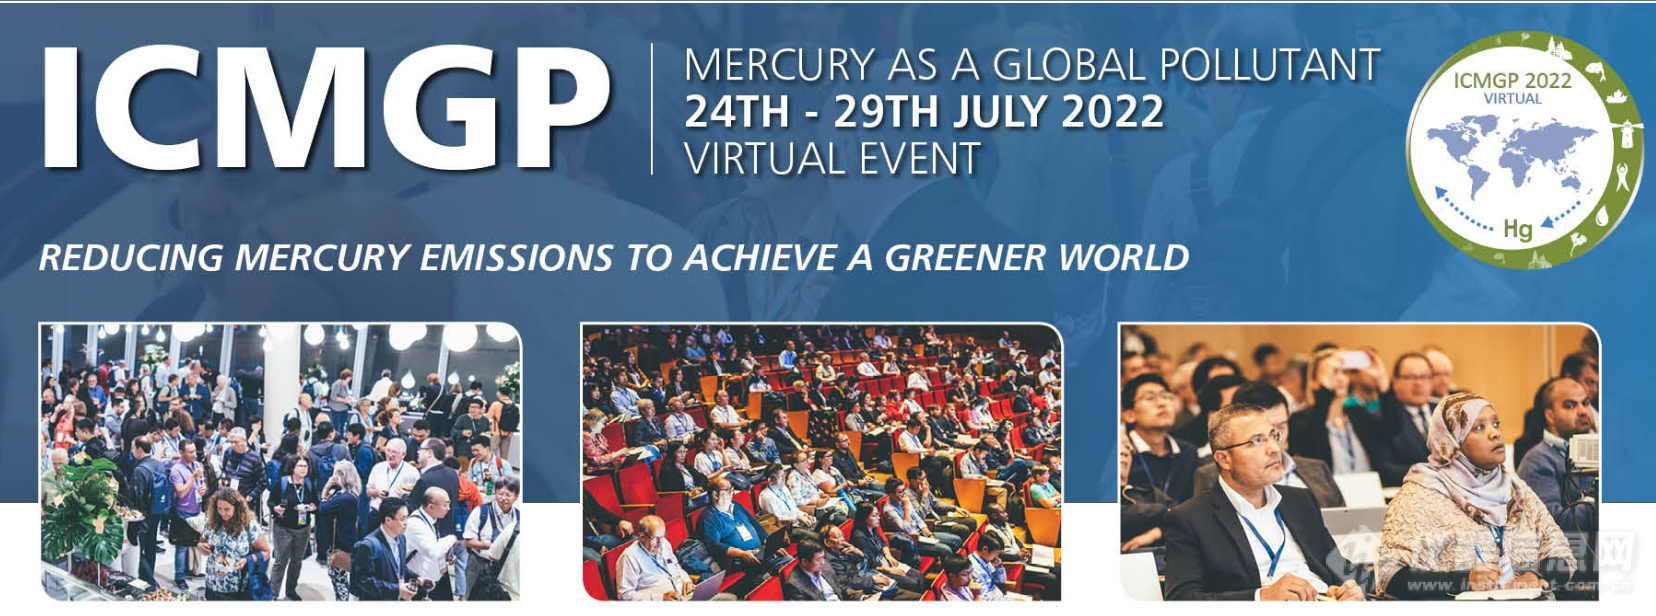 LUMEX作为金牌赞助商受邀参加全球汞污染会议ICMGP2022